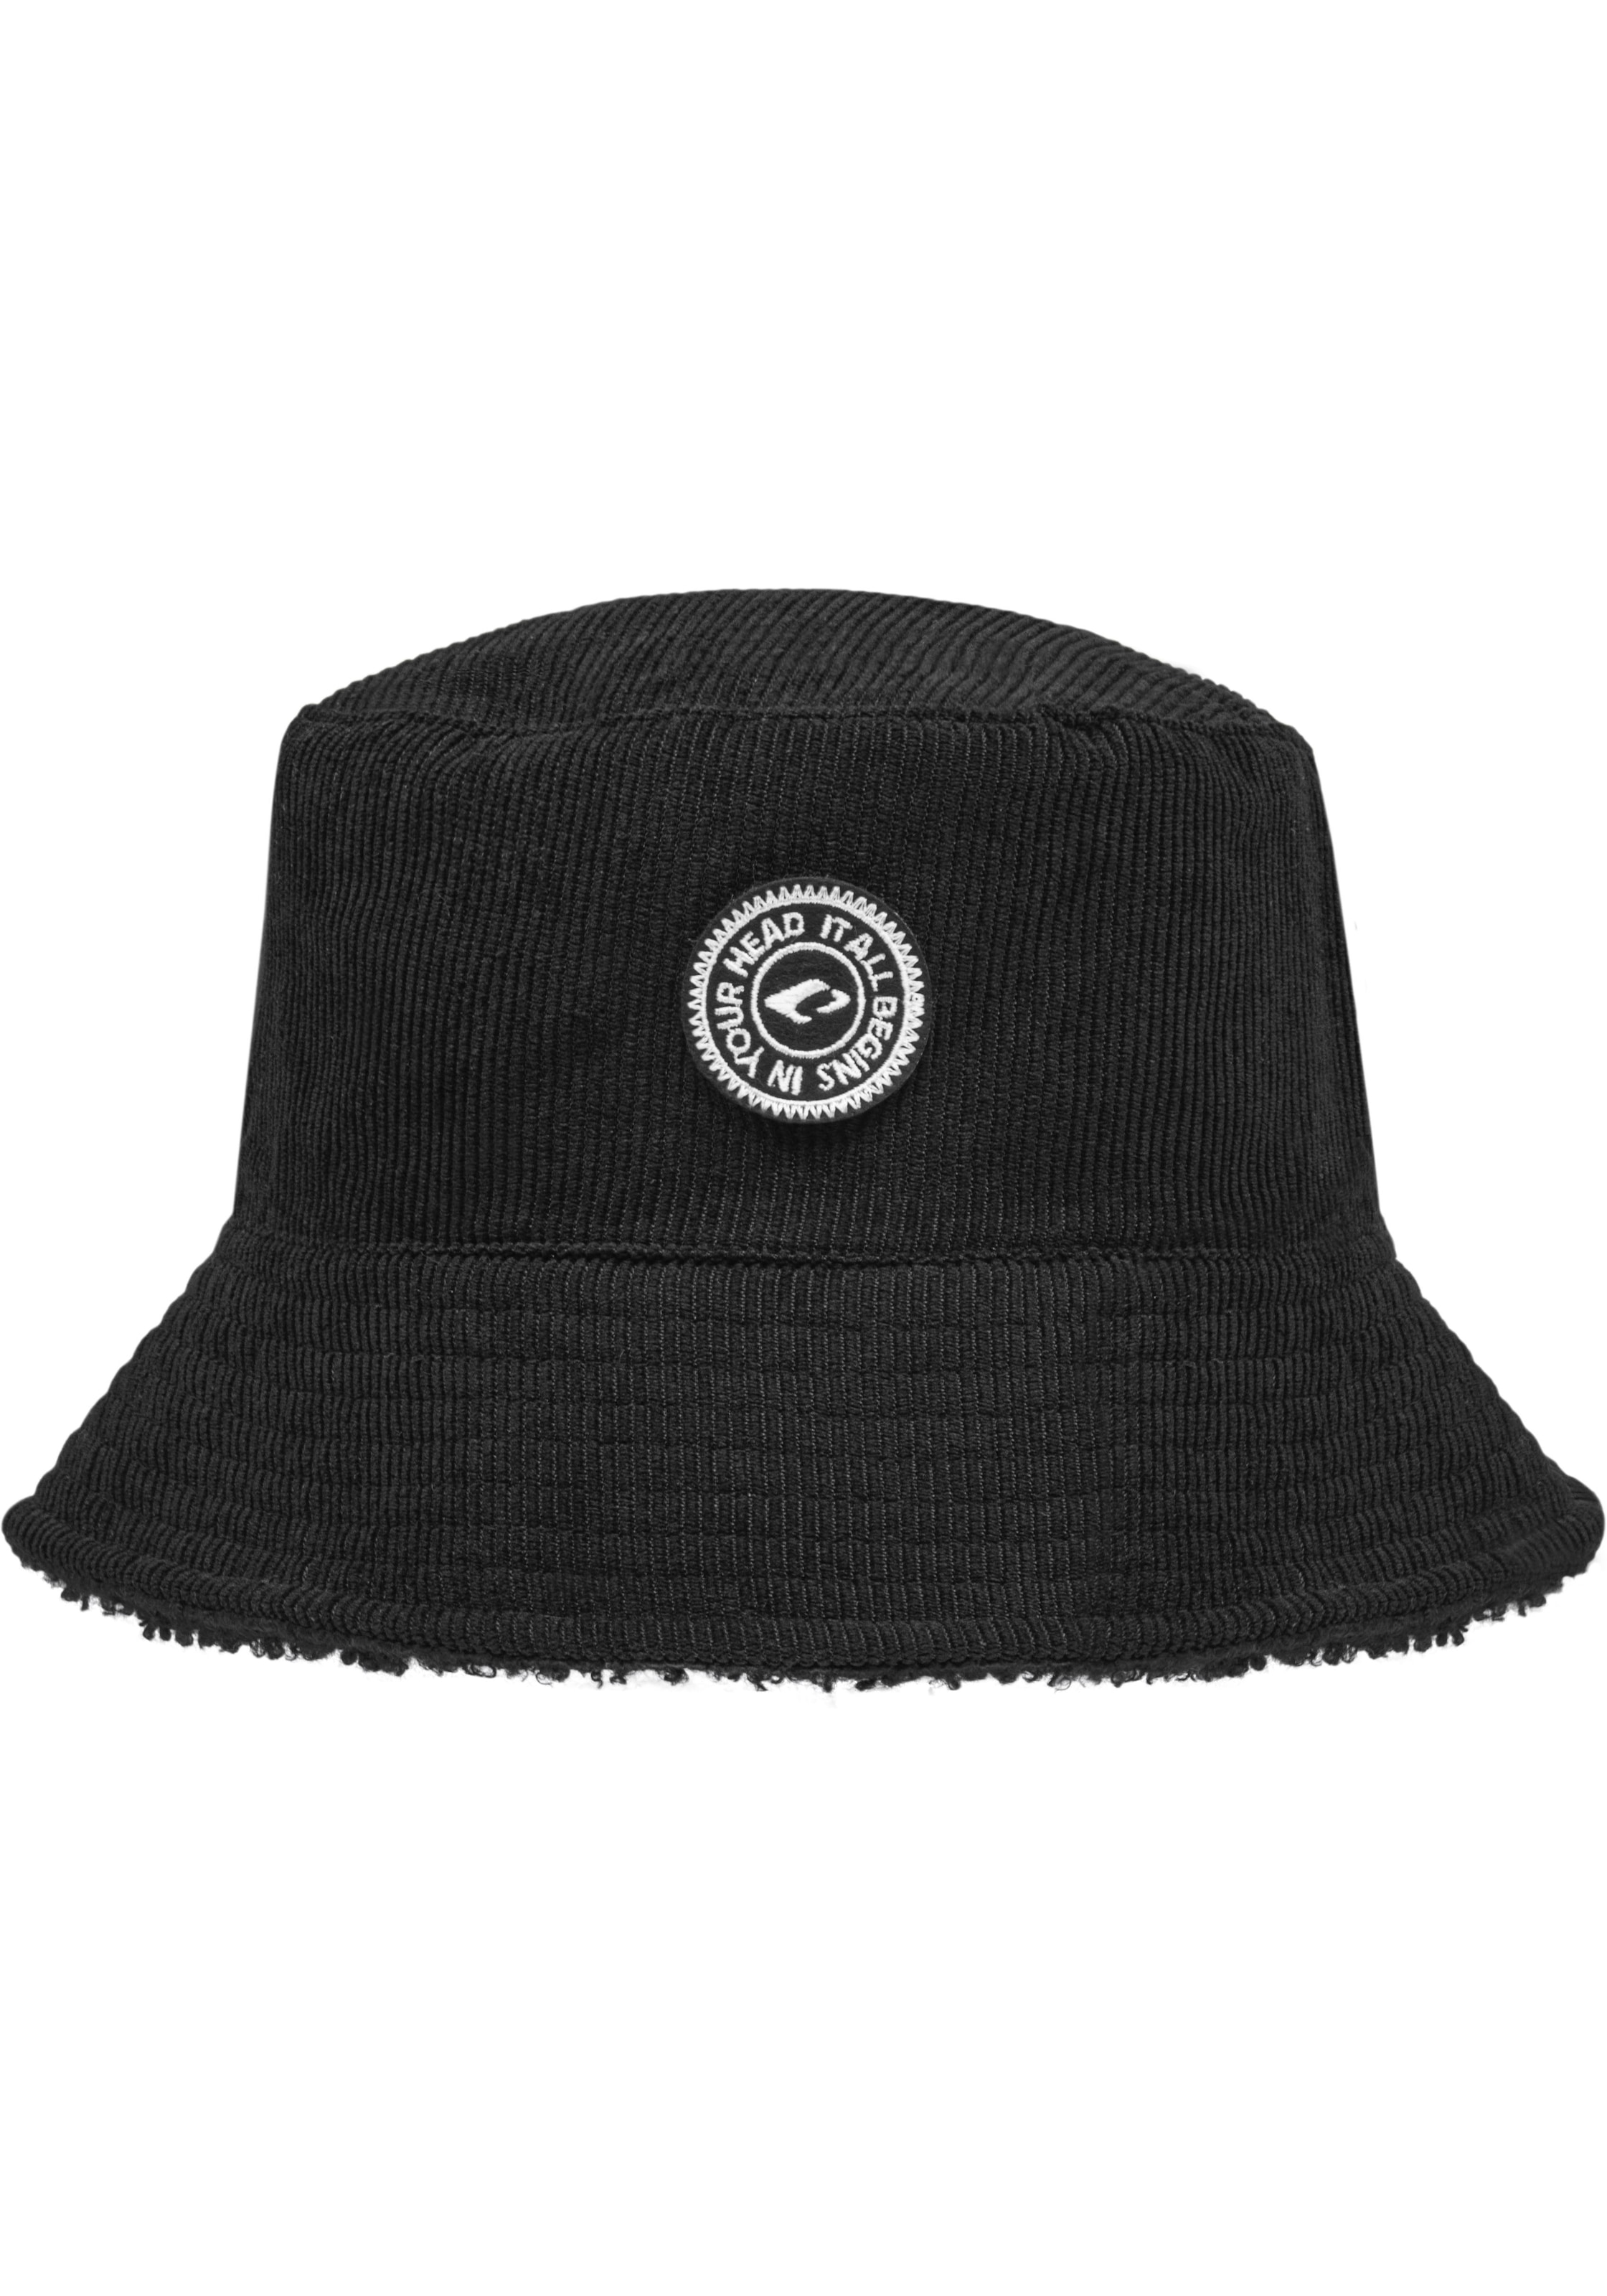 Hüte online kaufen Hut | Trendy shoppen jetzt auf